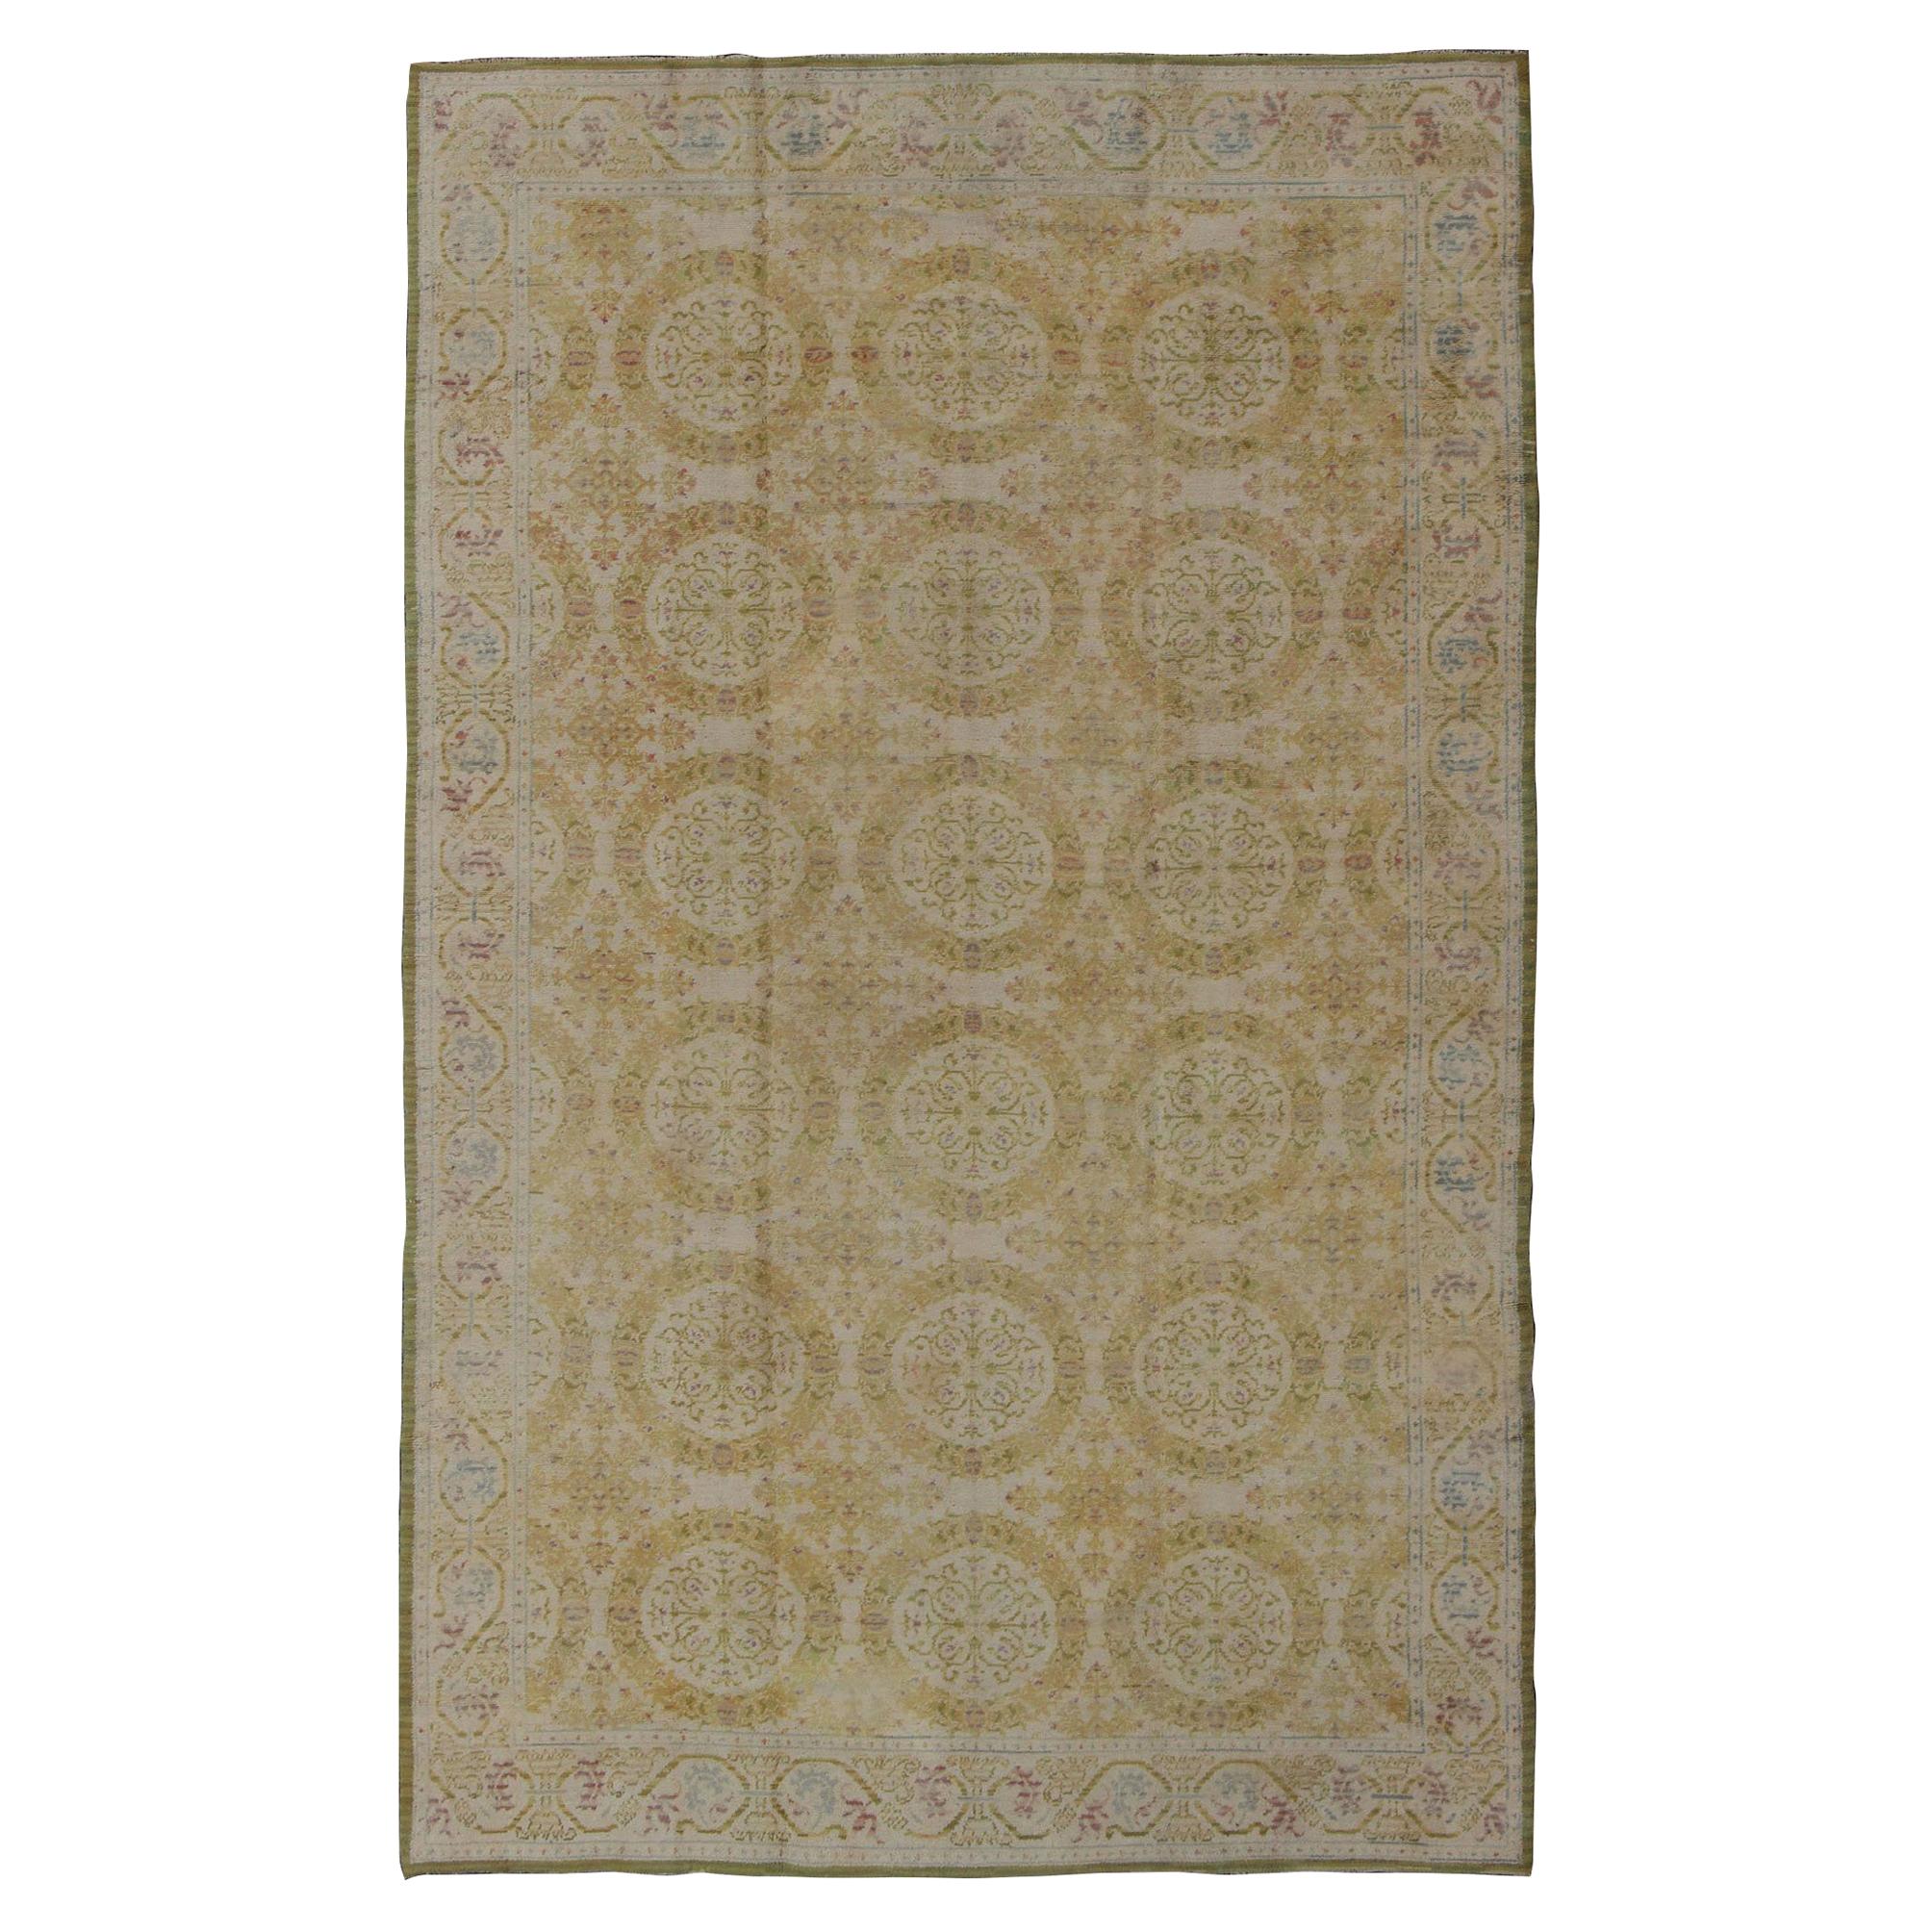 Antiker spanischer Teppich in Gelbgrün, Elfenbein und Lavendel